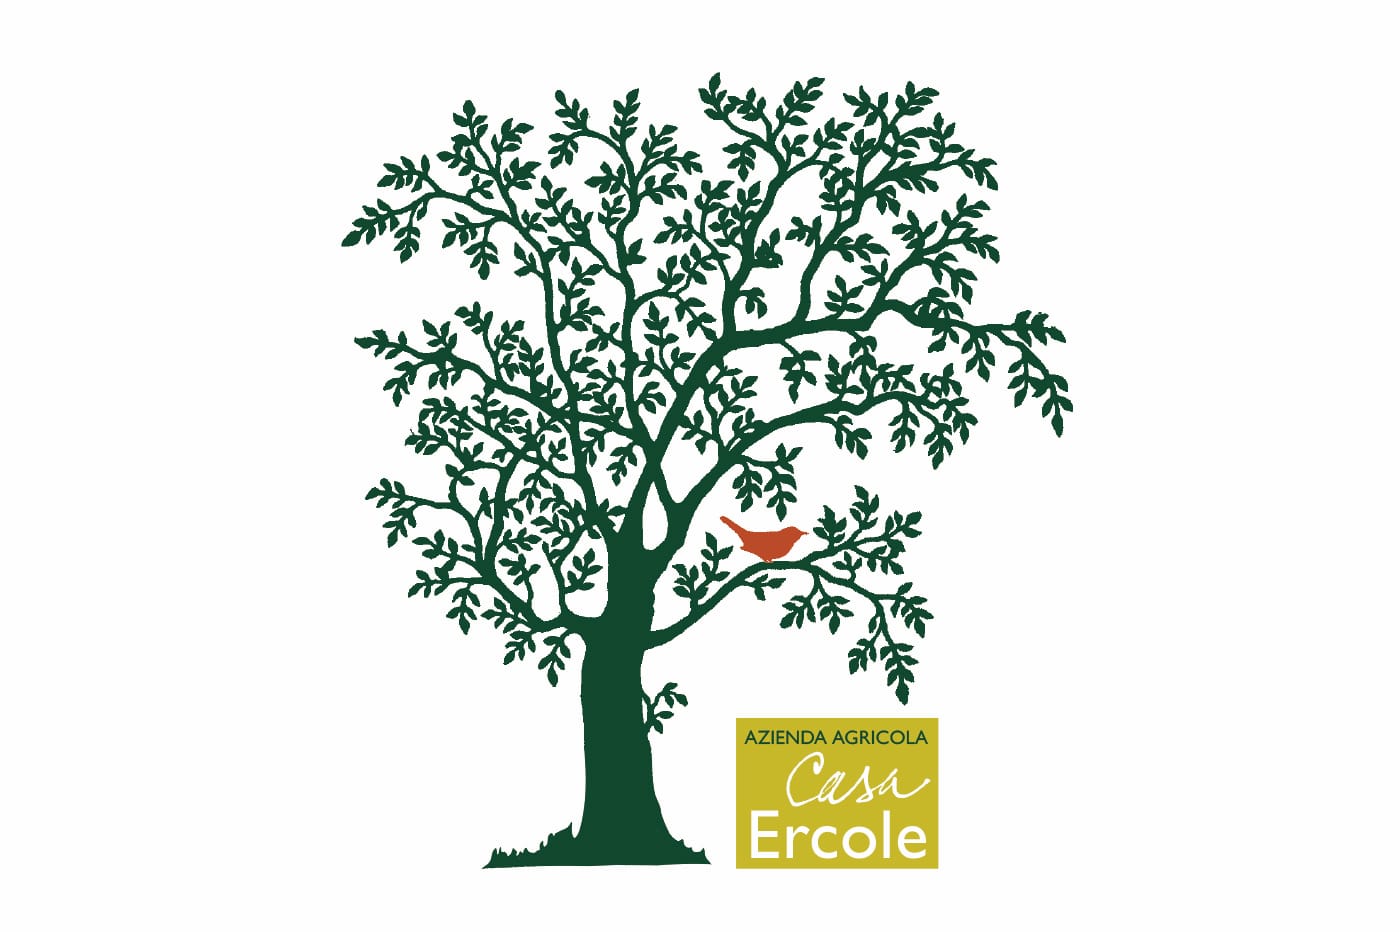 Azienda Agricola Casa Ercole - logo e linea coordinata per i prodotti dell'Azienda Agricola